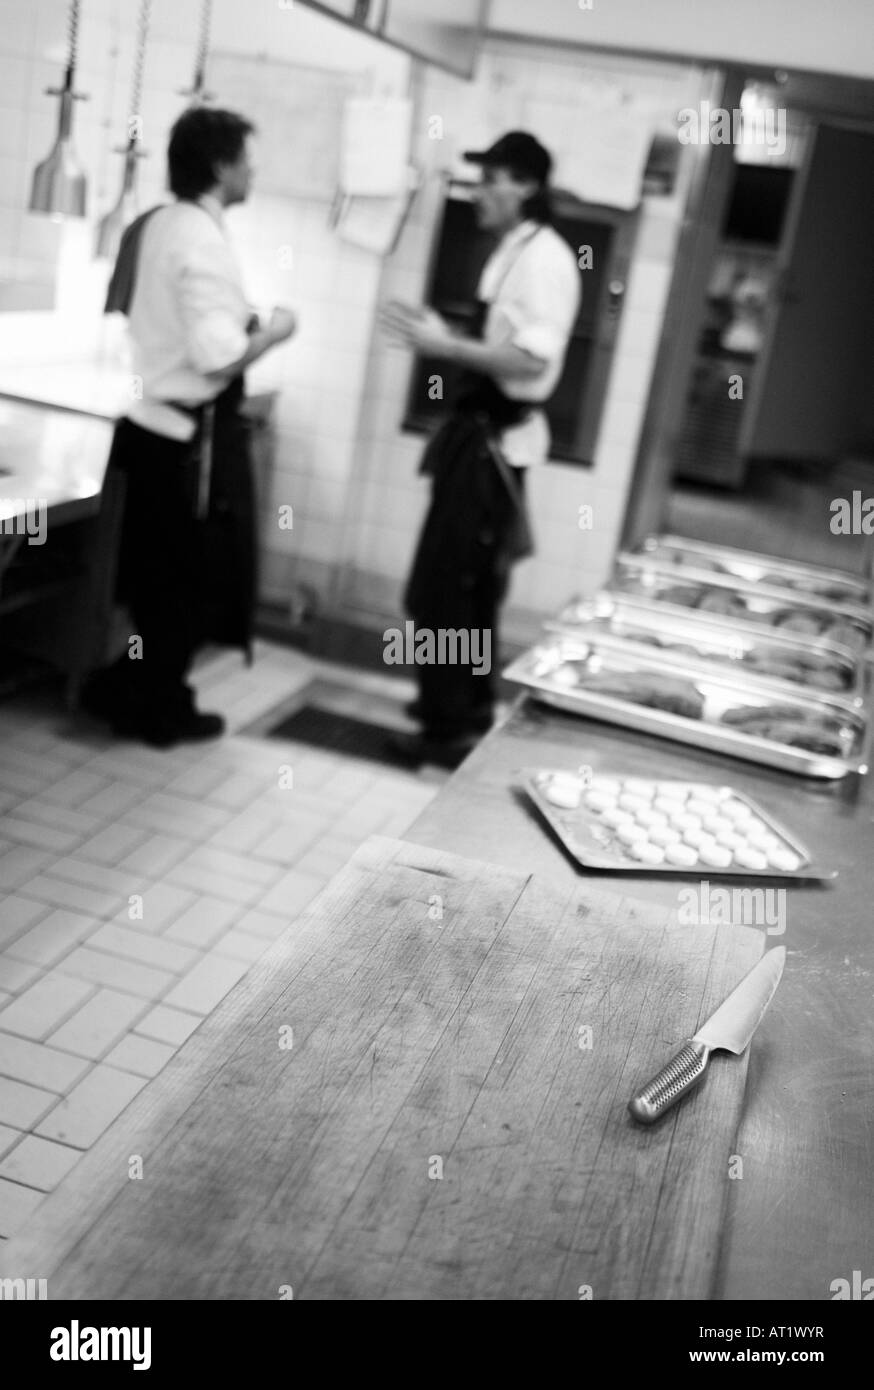 Aufnahme in Restaurantküche Sofiero in Helsingborg, Schweden. Leicht körnig. FÜR DEN REDAKTIONELLEN GEBRAUCH BESTIMMT. Stockfoto